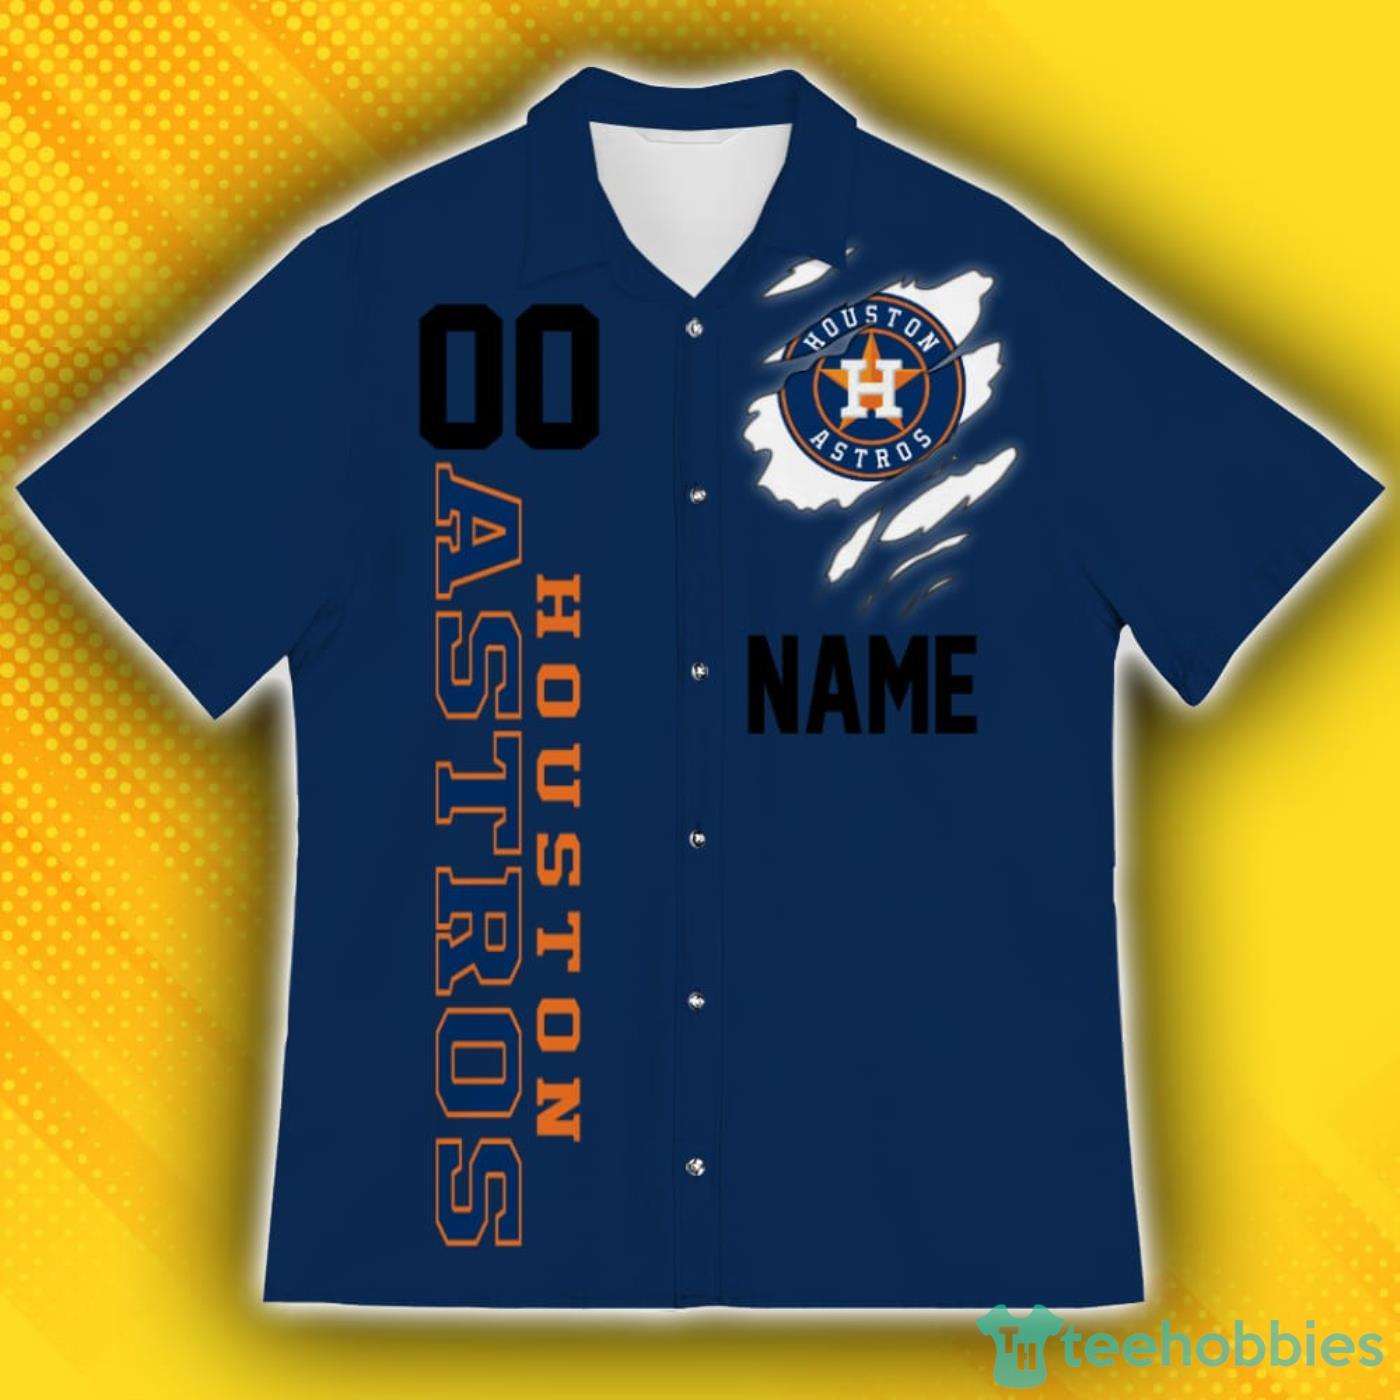 Houston Astros All Star Game Baseball Logo 2023 Shirt - Freedomdesign